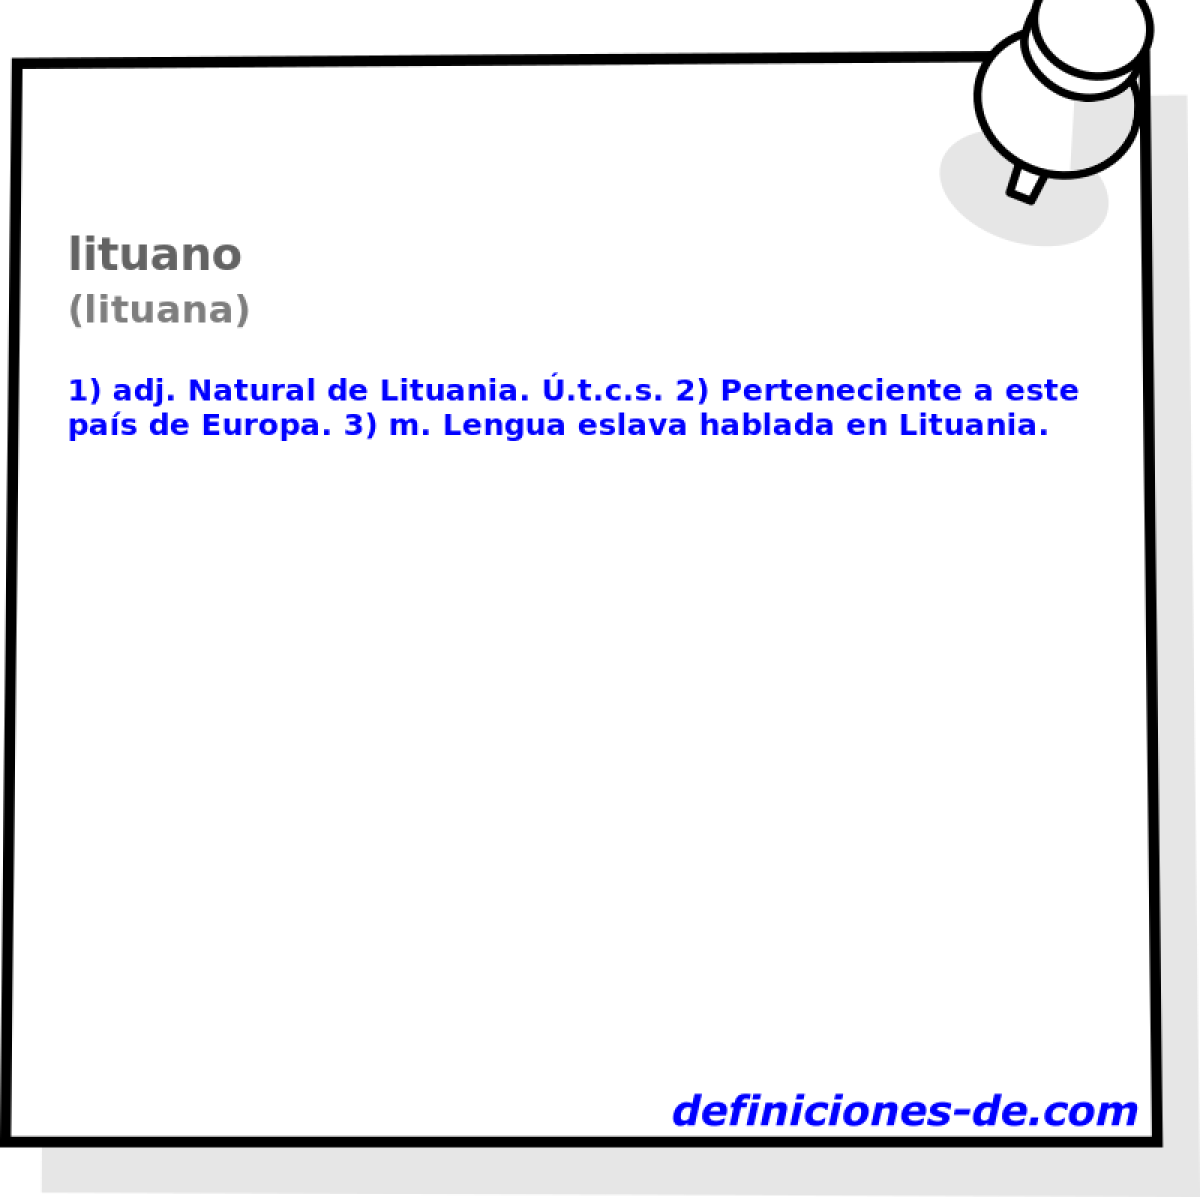 lituano (lituana)